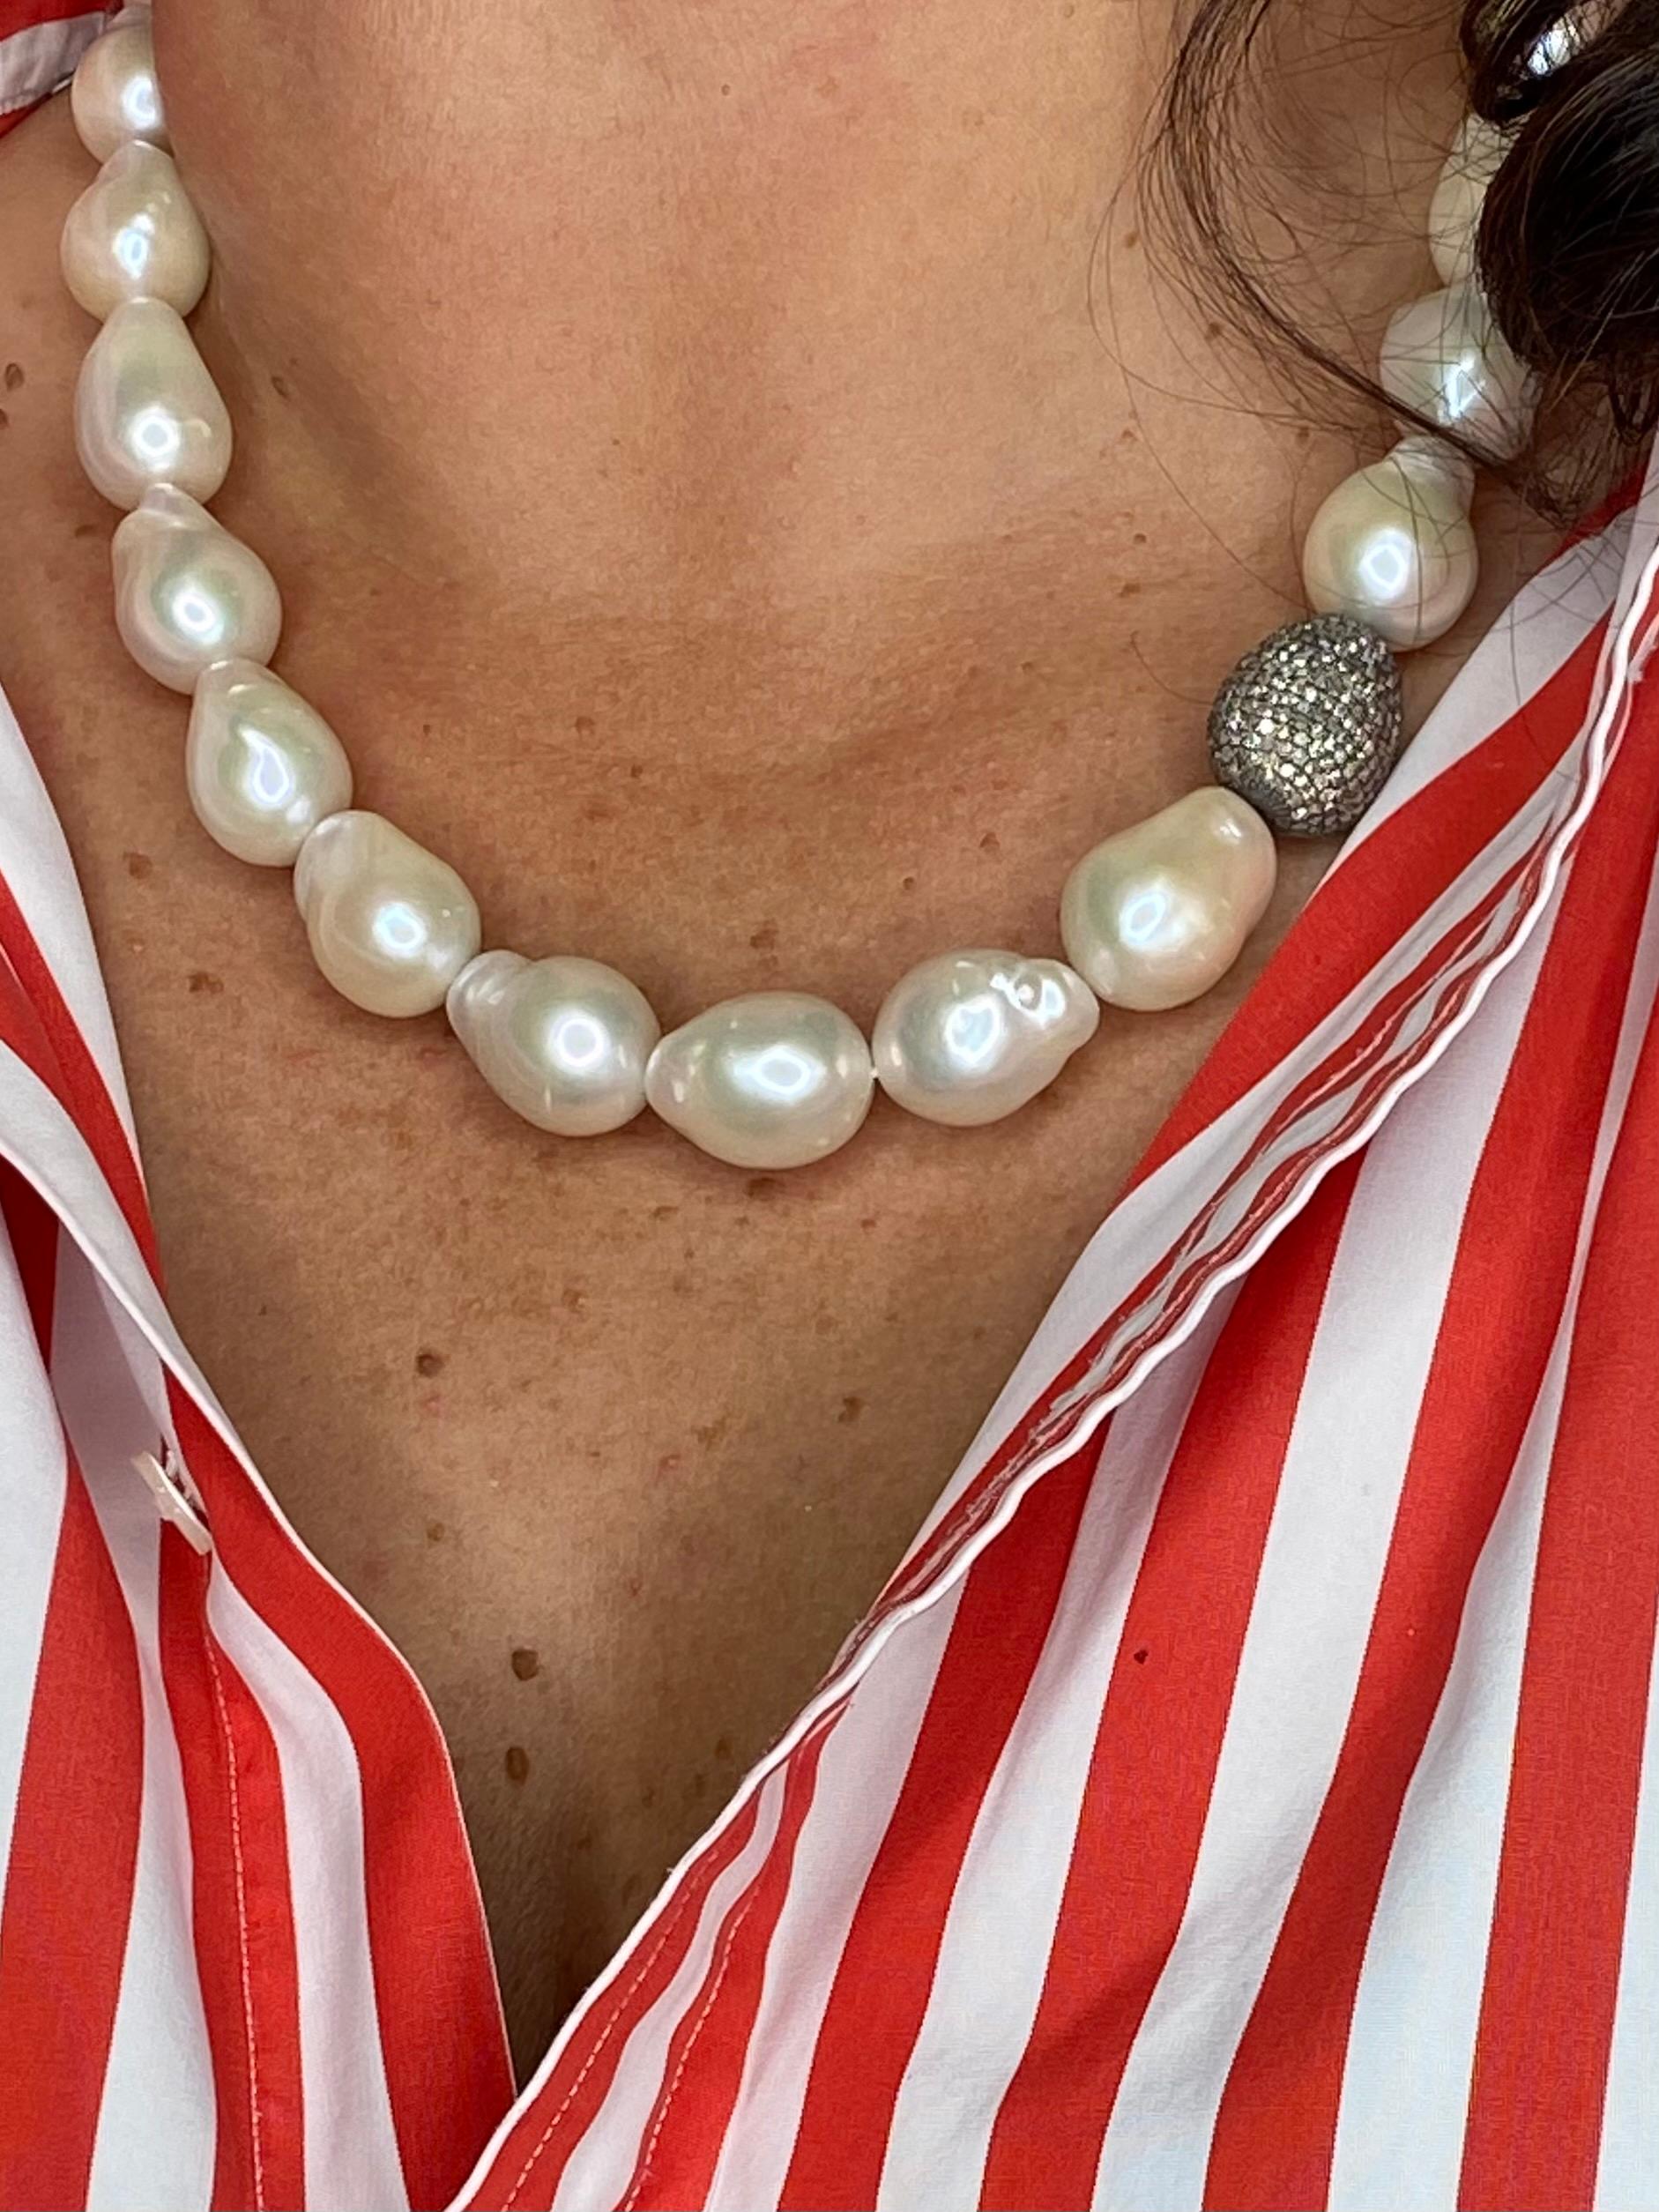 Willkommen in der prächtigen Welt unseres außergewöhnlichen Colliers, das die zeitlose Eleganz grauer Perlen mit dem fesselnden Glanz brauner Diamanten verbindet. Dieses Collier ist eine wahre Ode an die Raffinesse und den Luxus und schafft eine